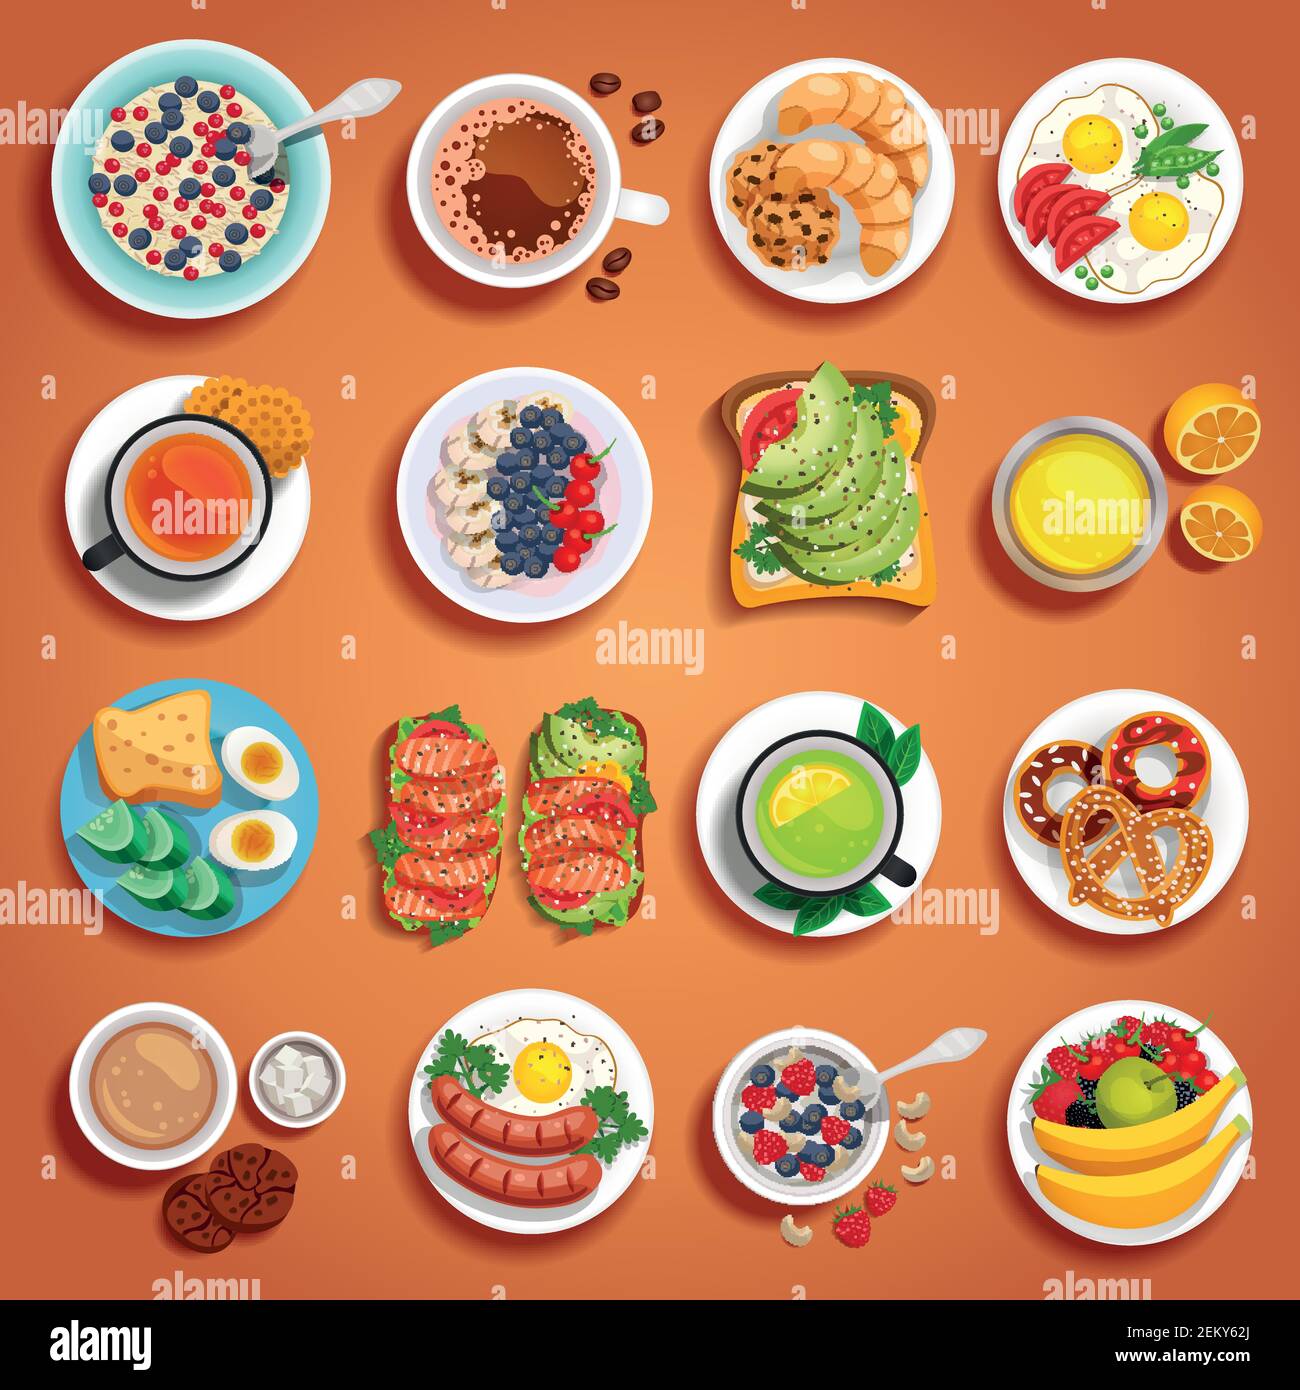 Farbenfrohe Frühstückgerichte auf orangefarbenem Hintergrund mit Obstteig Bäckerei Rührei gekochte Eier Sandwiches auf Platten unterschiedlicher Größe vektorillus Stock Vektor